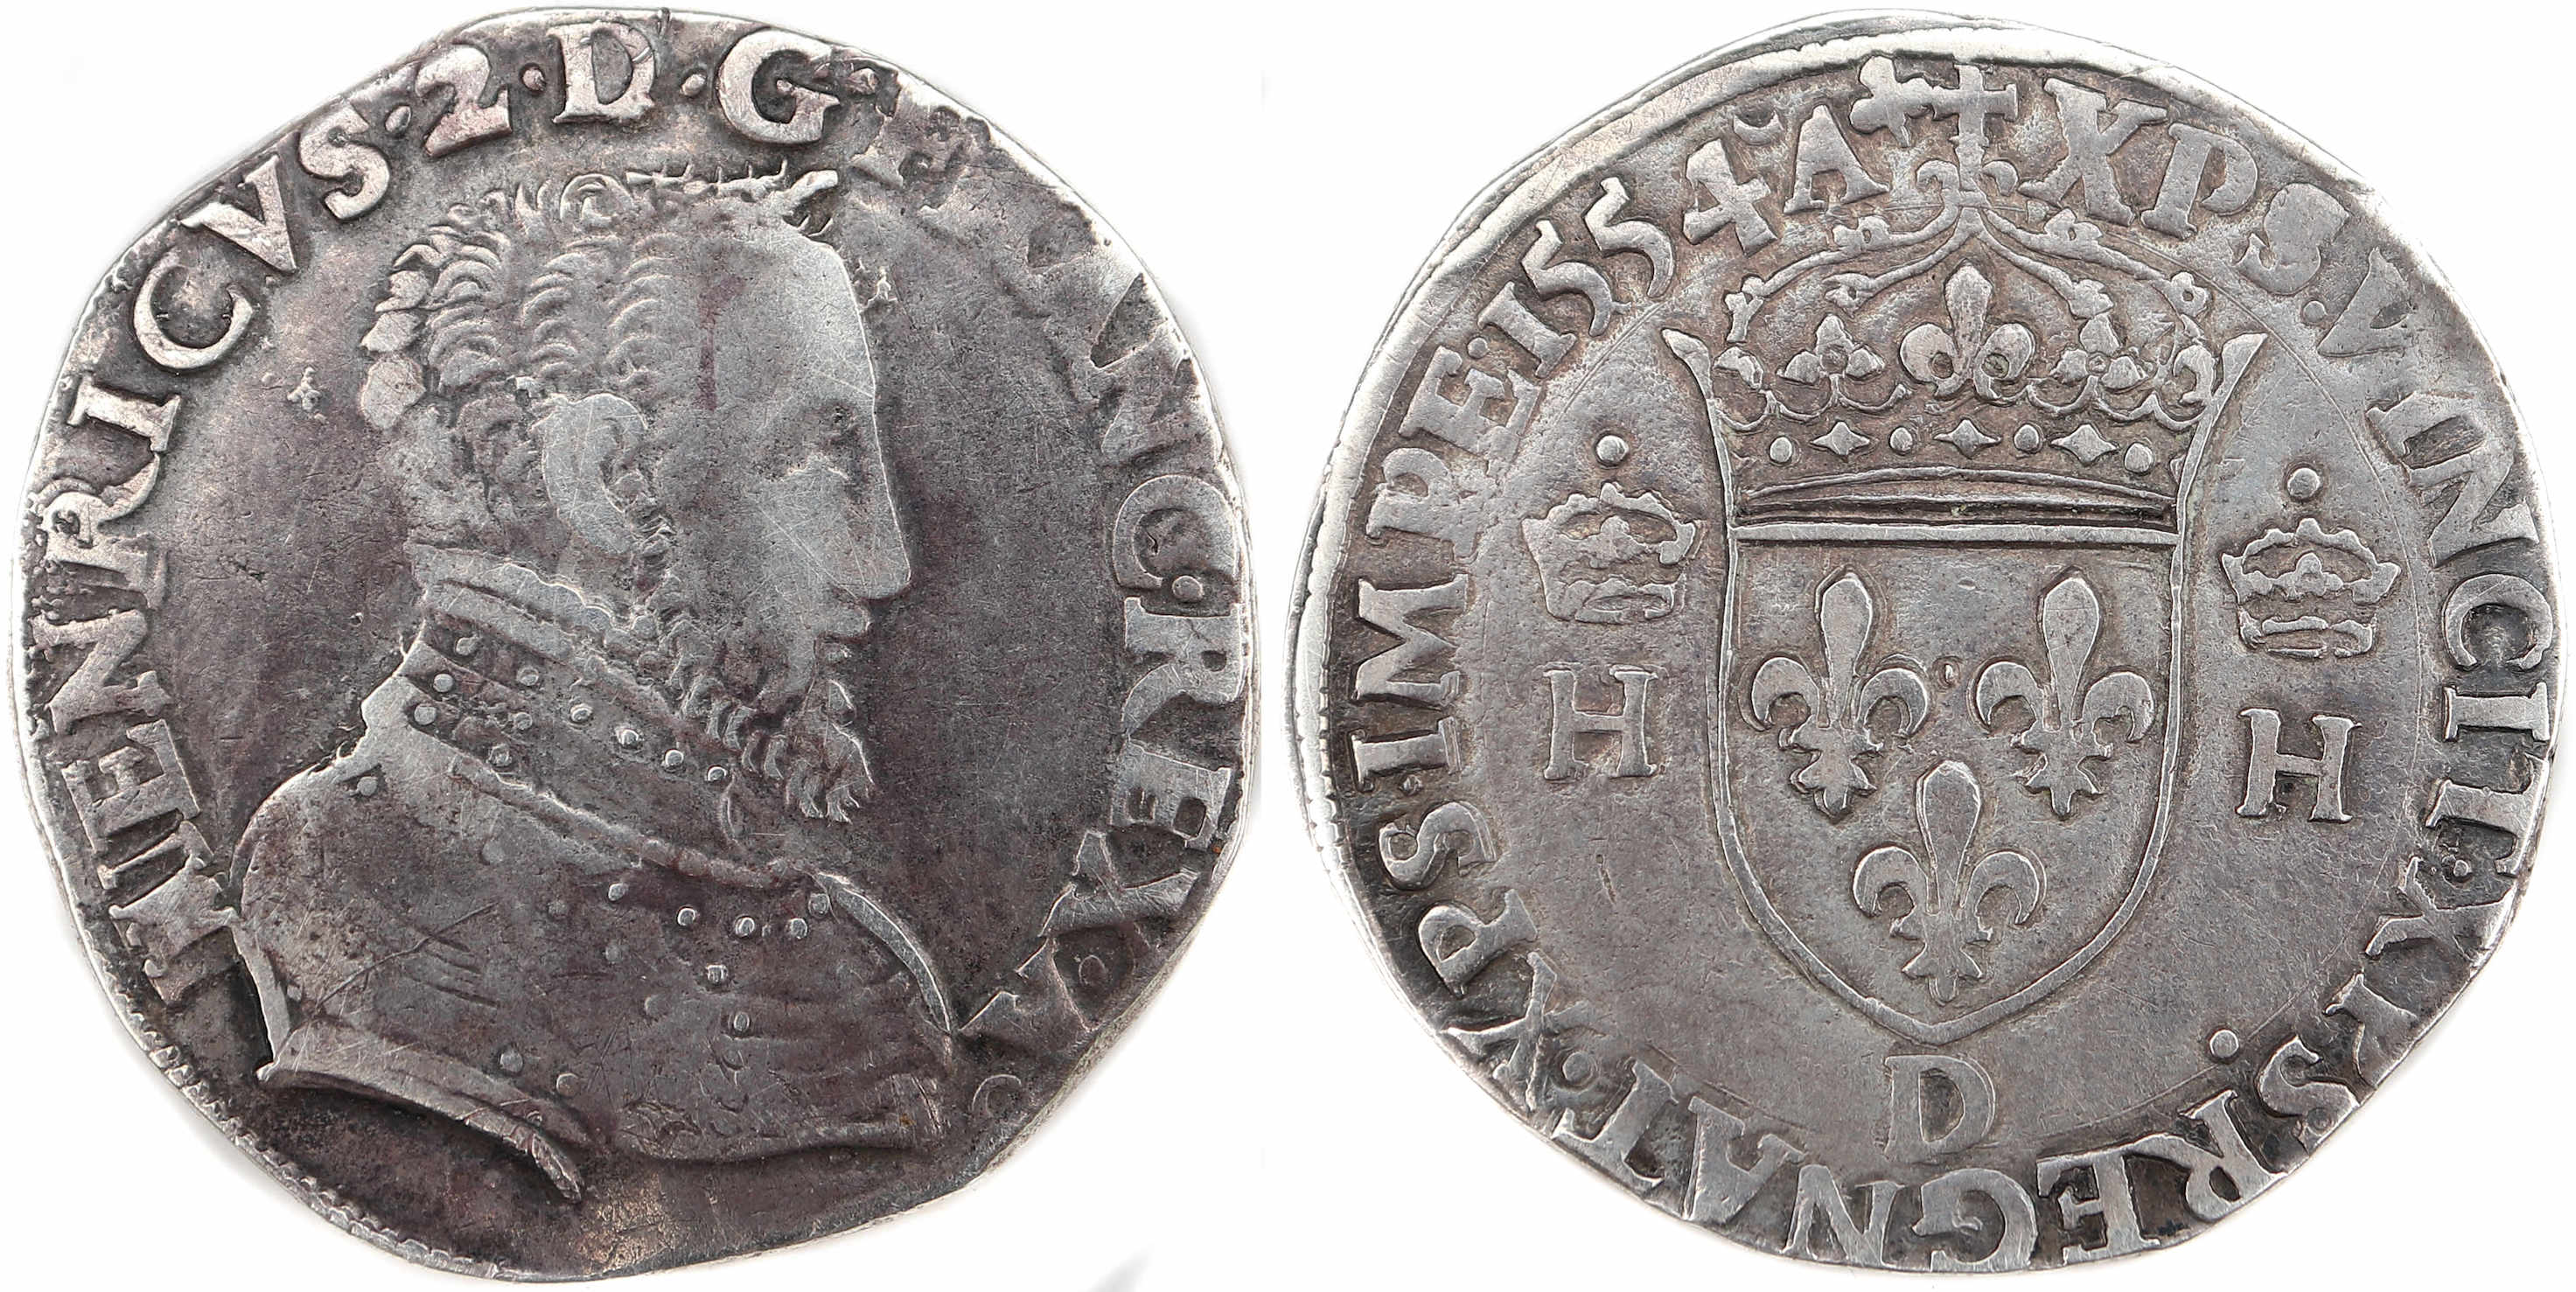 HENRI II-TESTON 1554